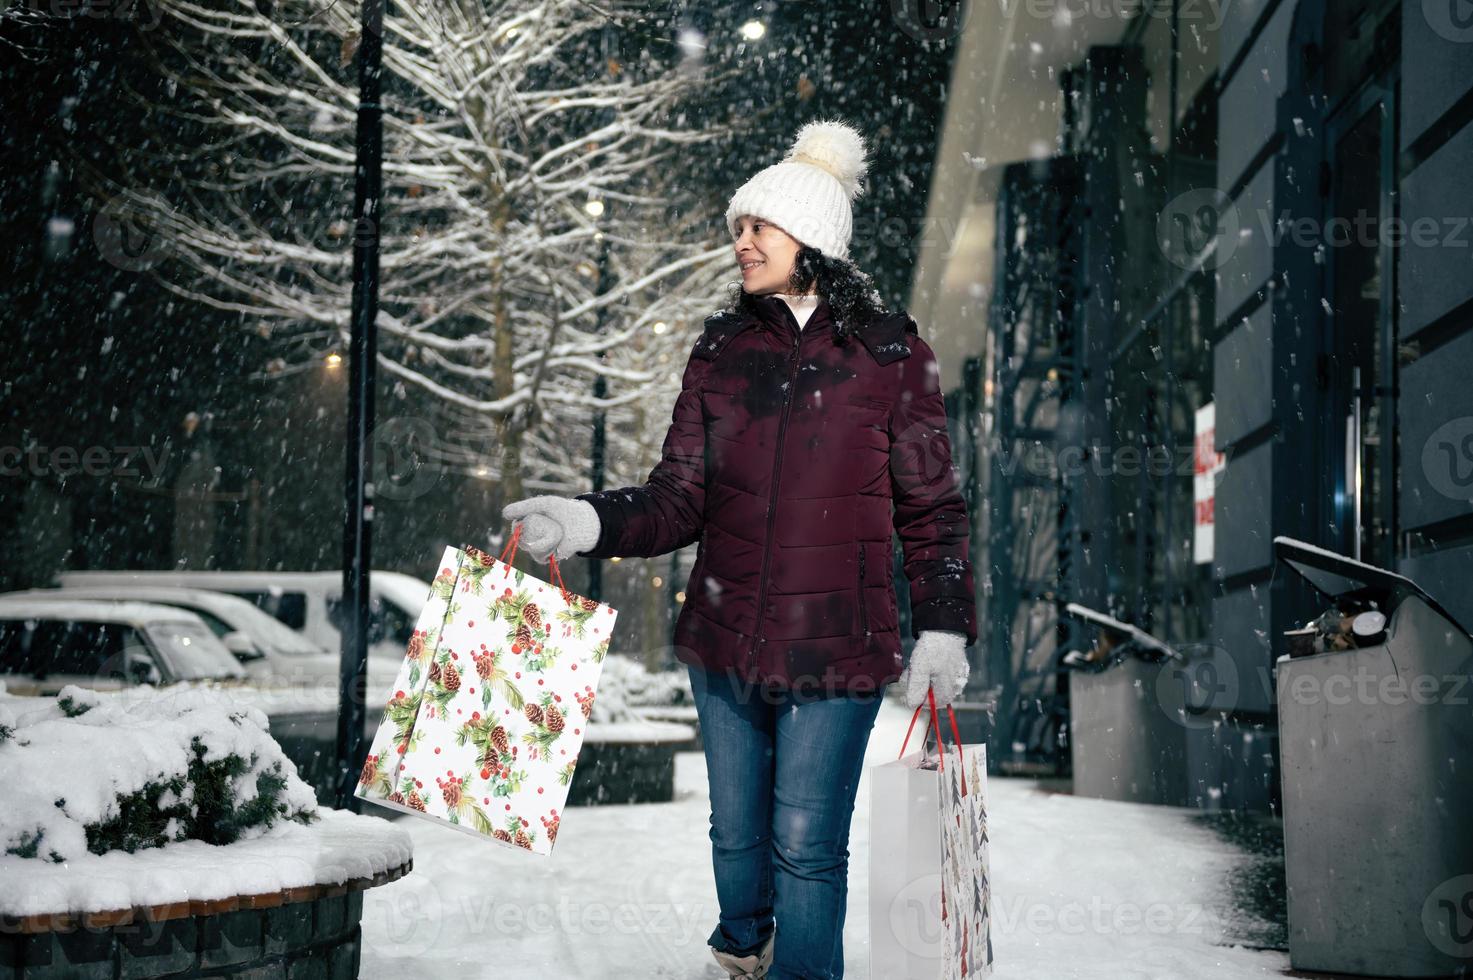 délicieux Jeune femme en marchant vers le bas le rue avec achats Sacs avec Noël cadeau boîte dans sa mains. joyeux Noël. photo